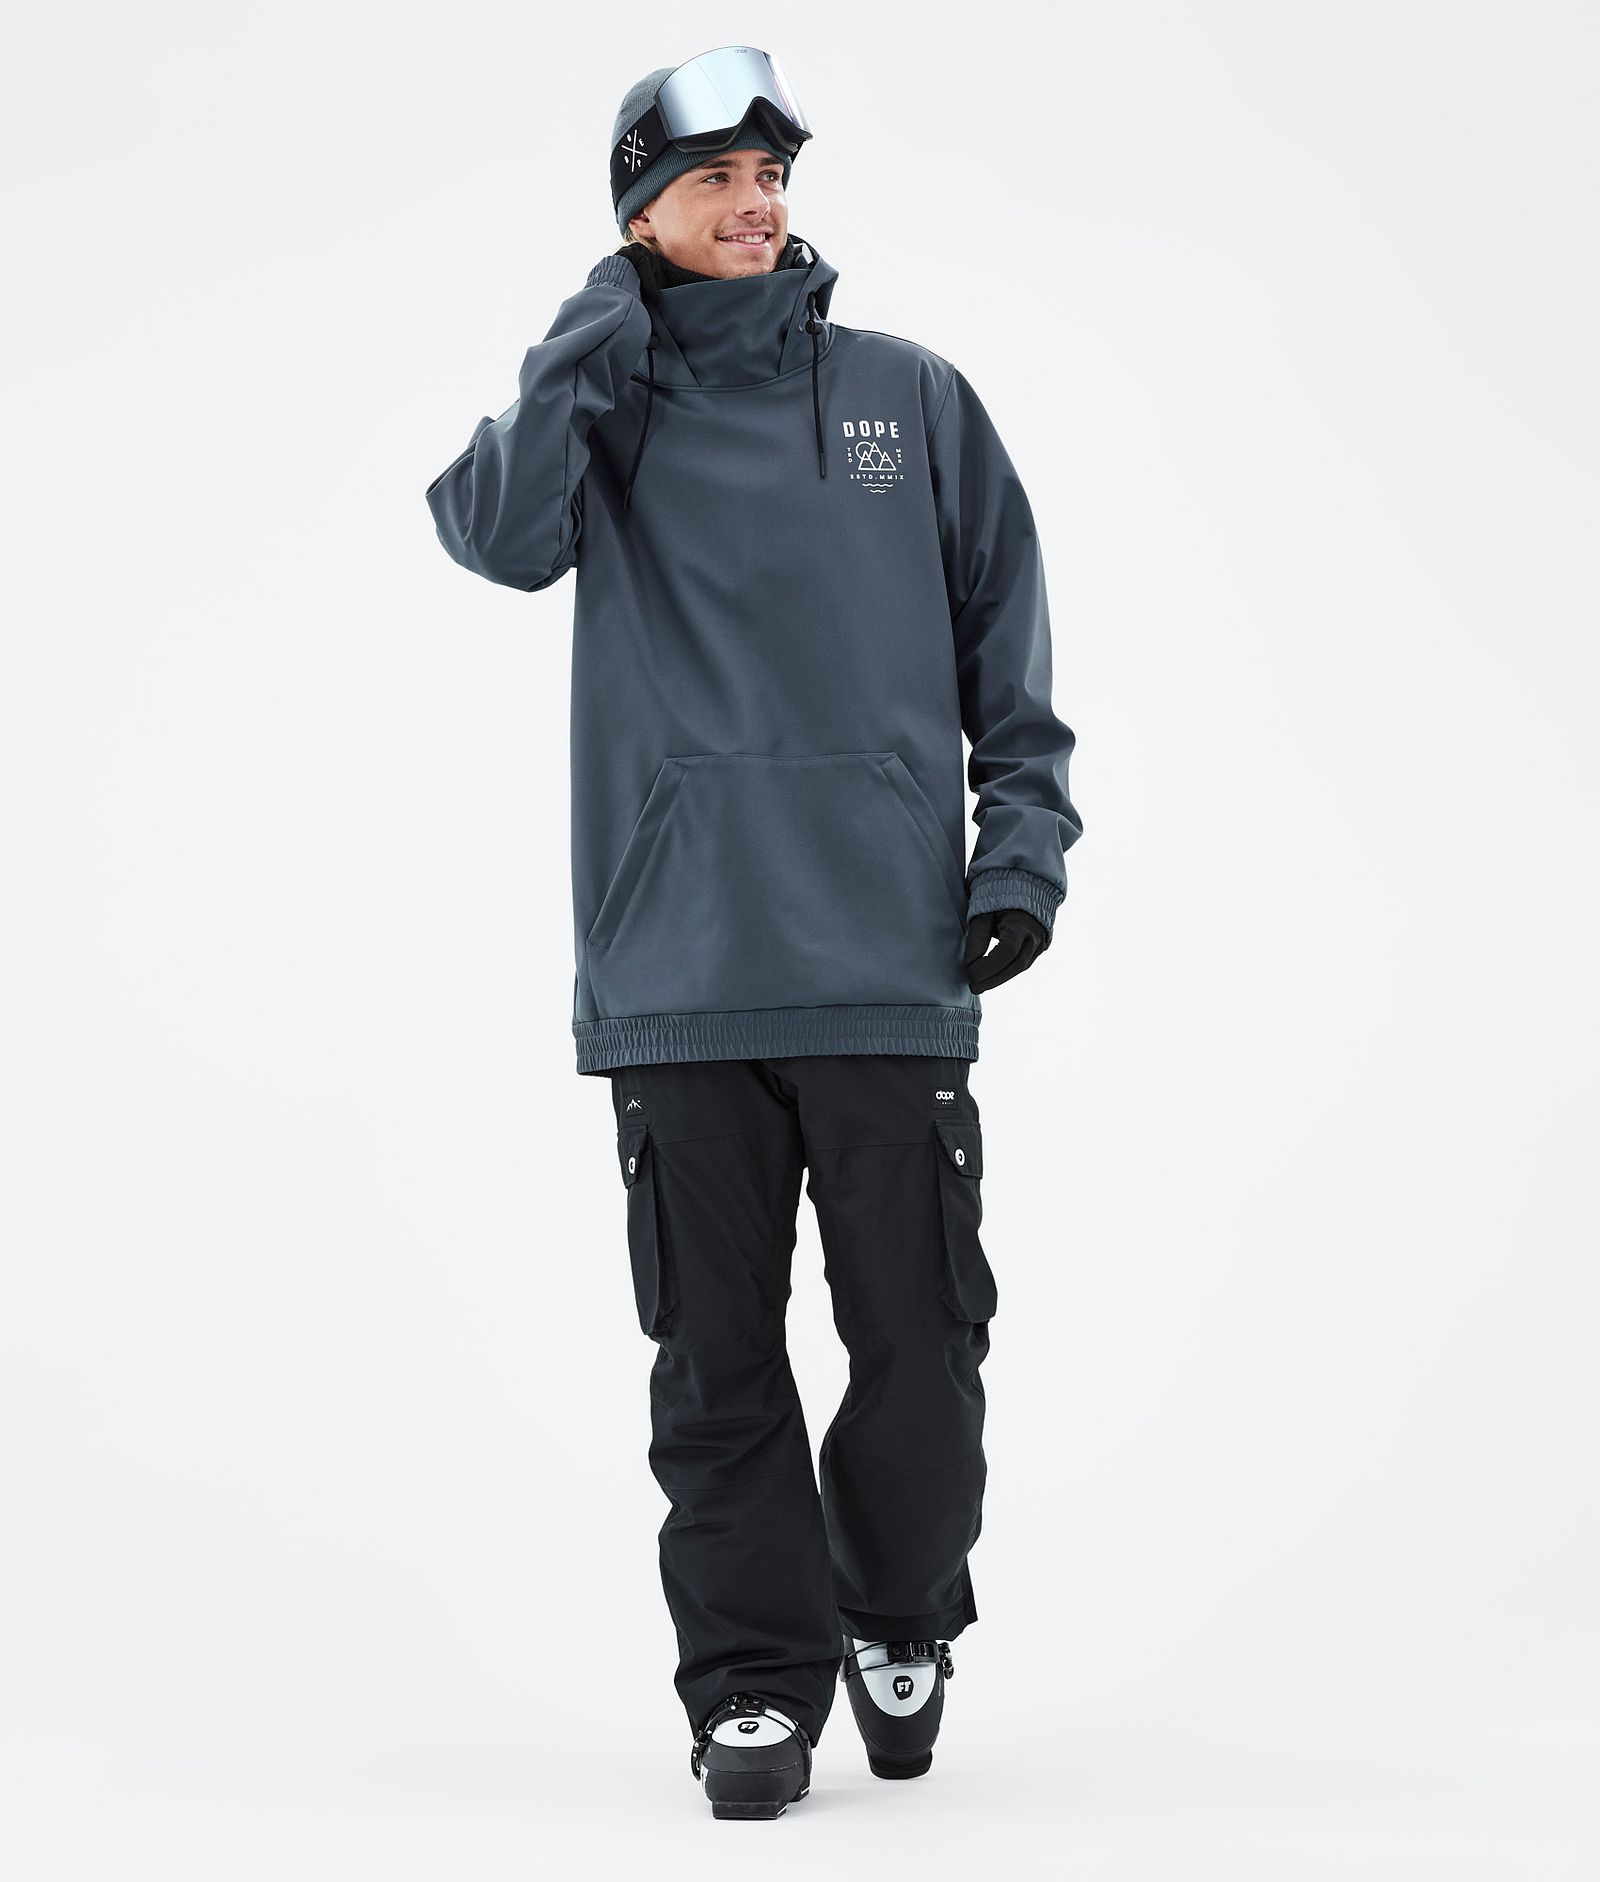 Dope Yeti 2022 Ski Jacket Men Summit Metal Blue, Image 6 of 8